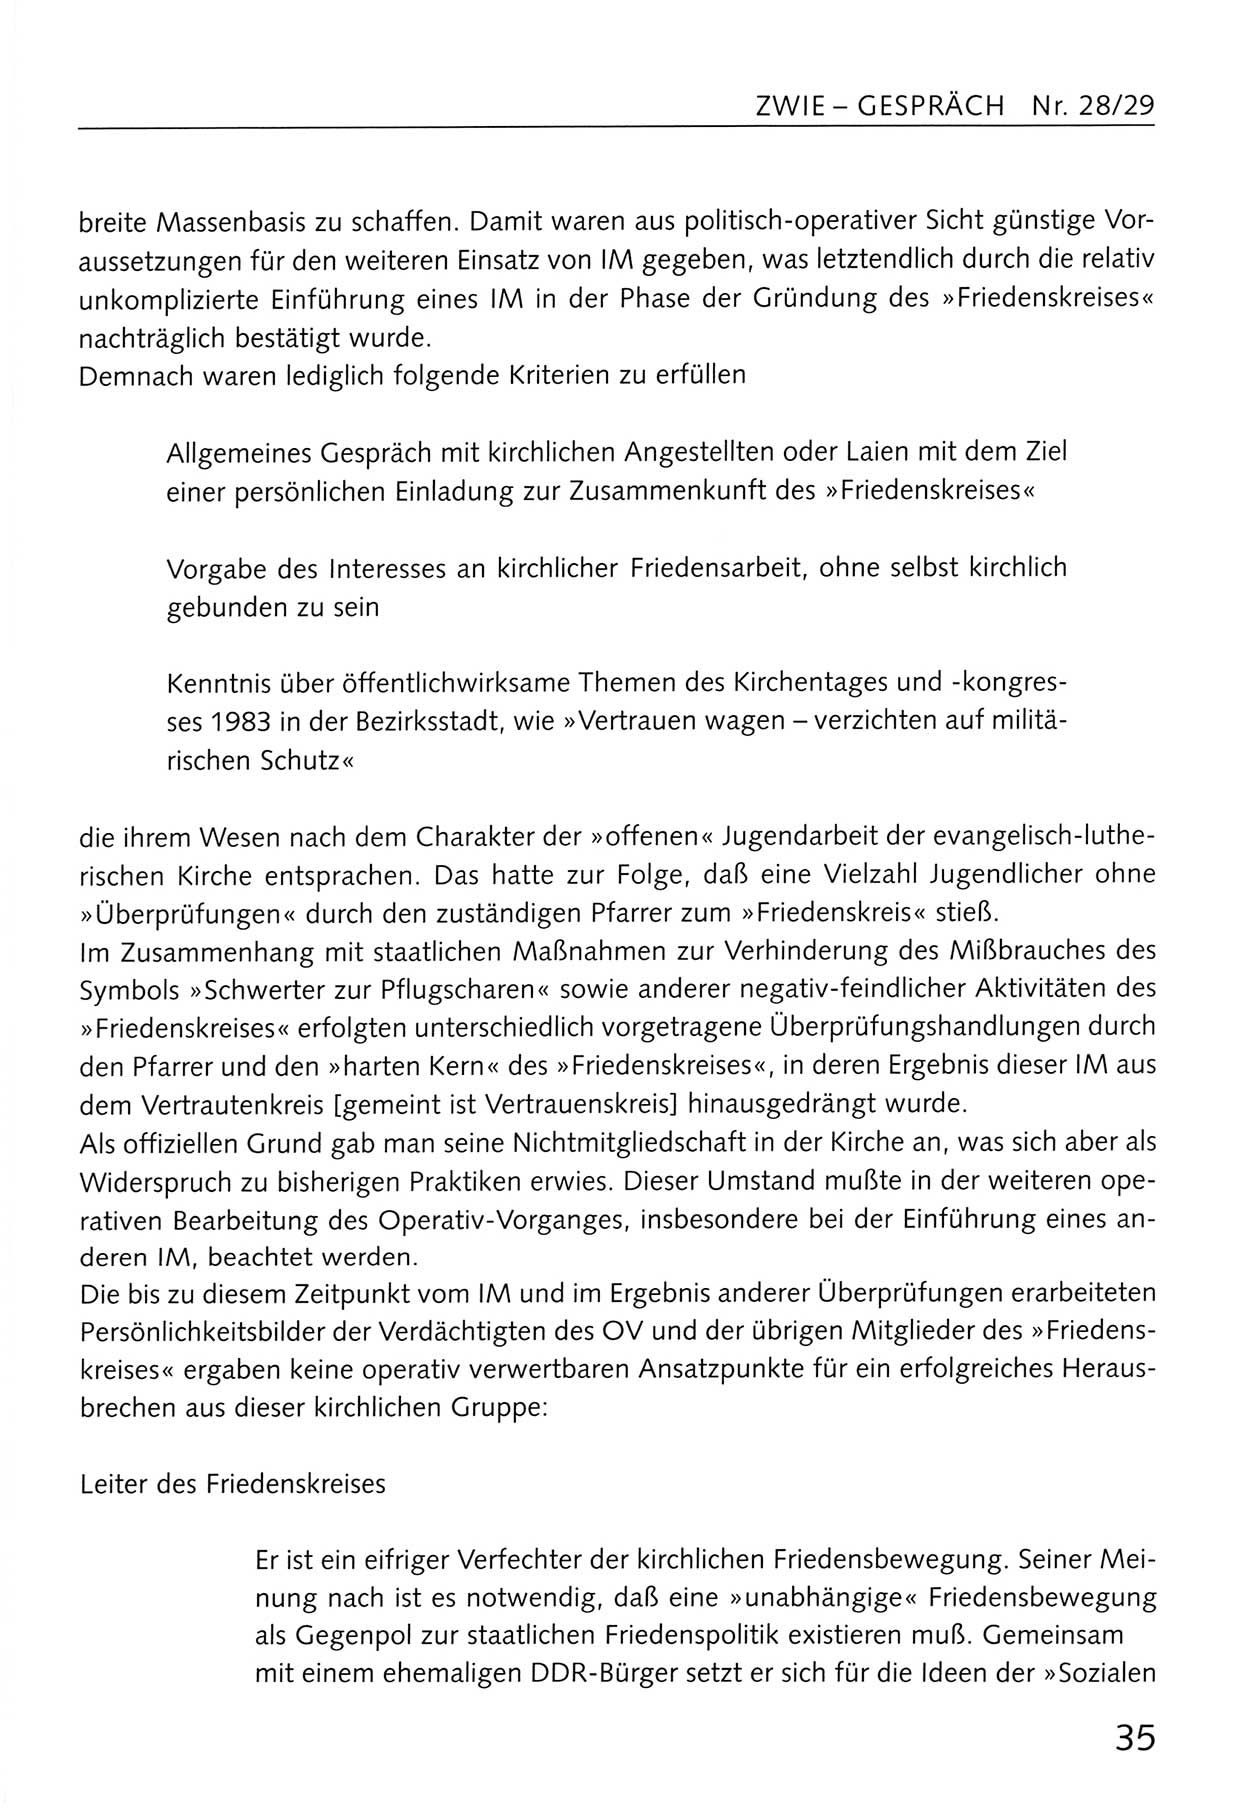 Zwie-Gespräch, Beiträge zum Umgang mit der Staatssicherheits-Vergangenheit [Deutsche Demokratische Republik (DDR)], Ausgabe Nr. 28/29, Berlin 1995, Seite 35 (Zwie-Gespr. Ausg. 28/29 1995, S. 35)